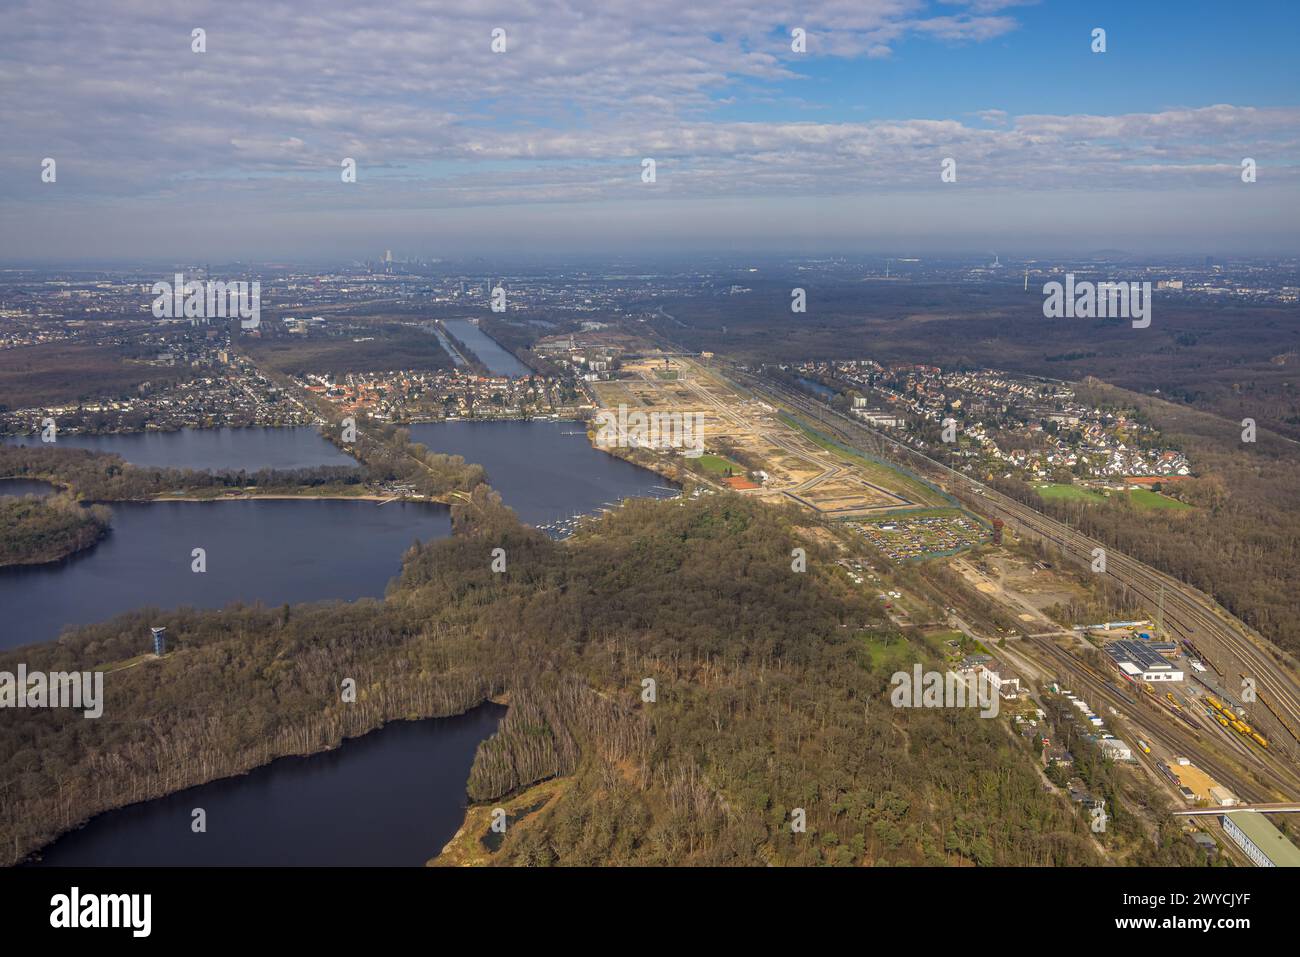 Luftaufnahme, Baustelle für geplante Duisburger Wohnquartier am ehemaligen Rangierbahnhof Wedau, an der Sechs-Seen-Platte und Regattabahn Stockfoto